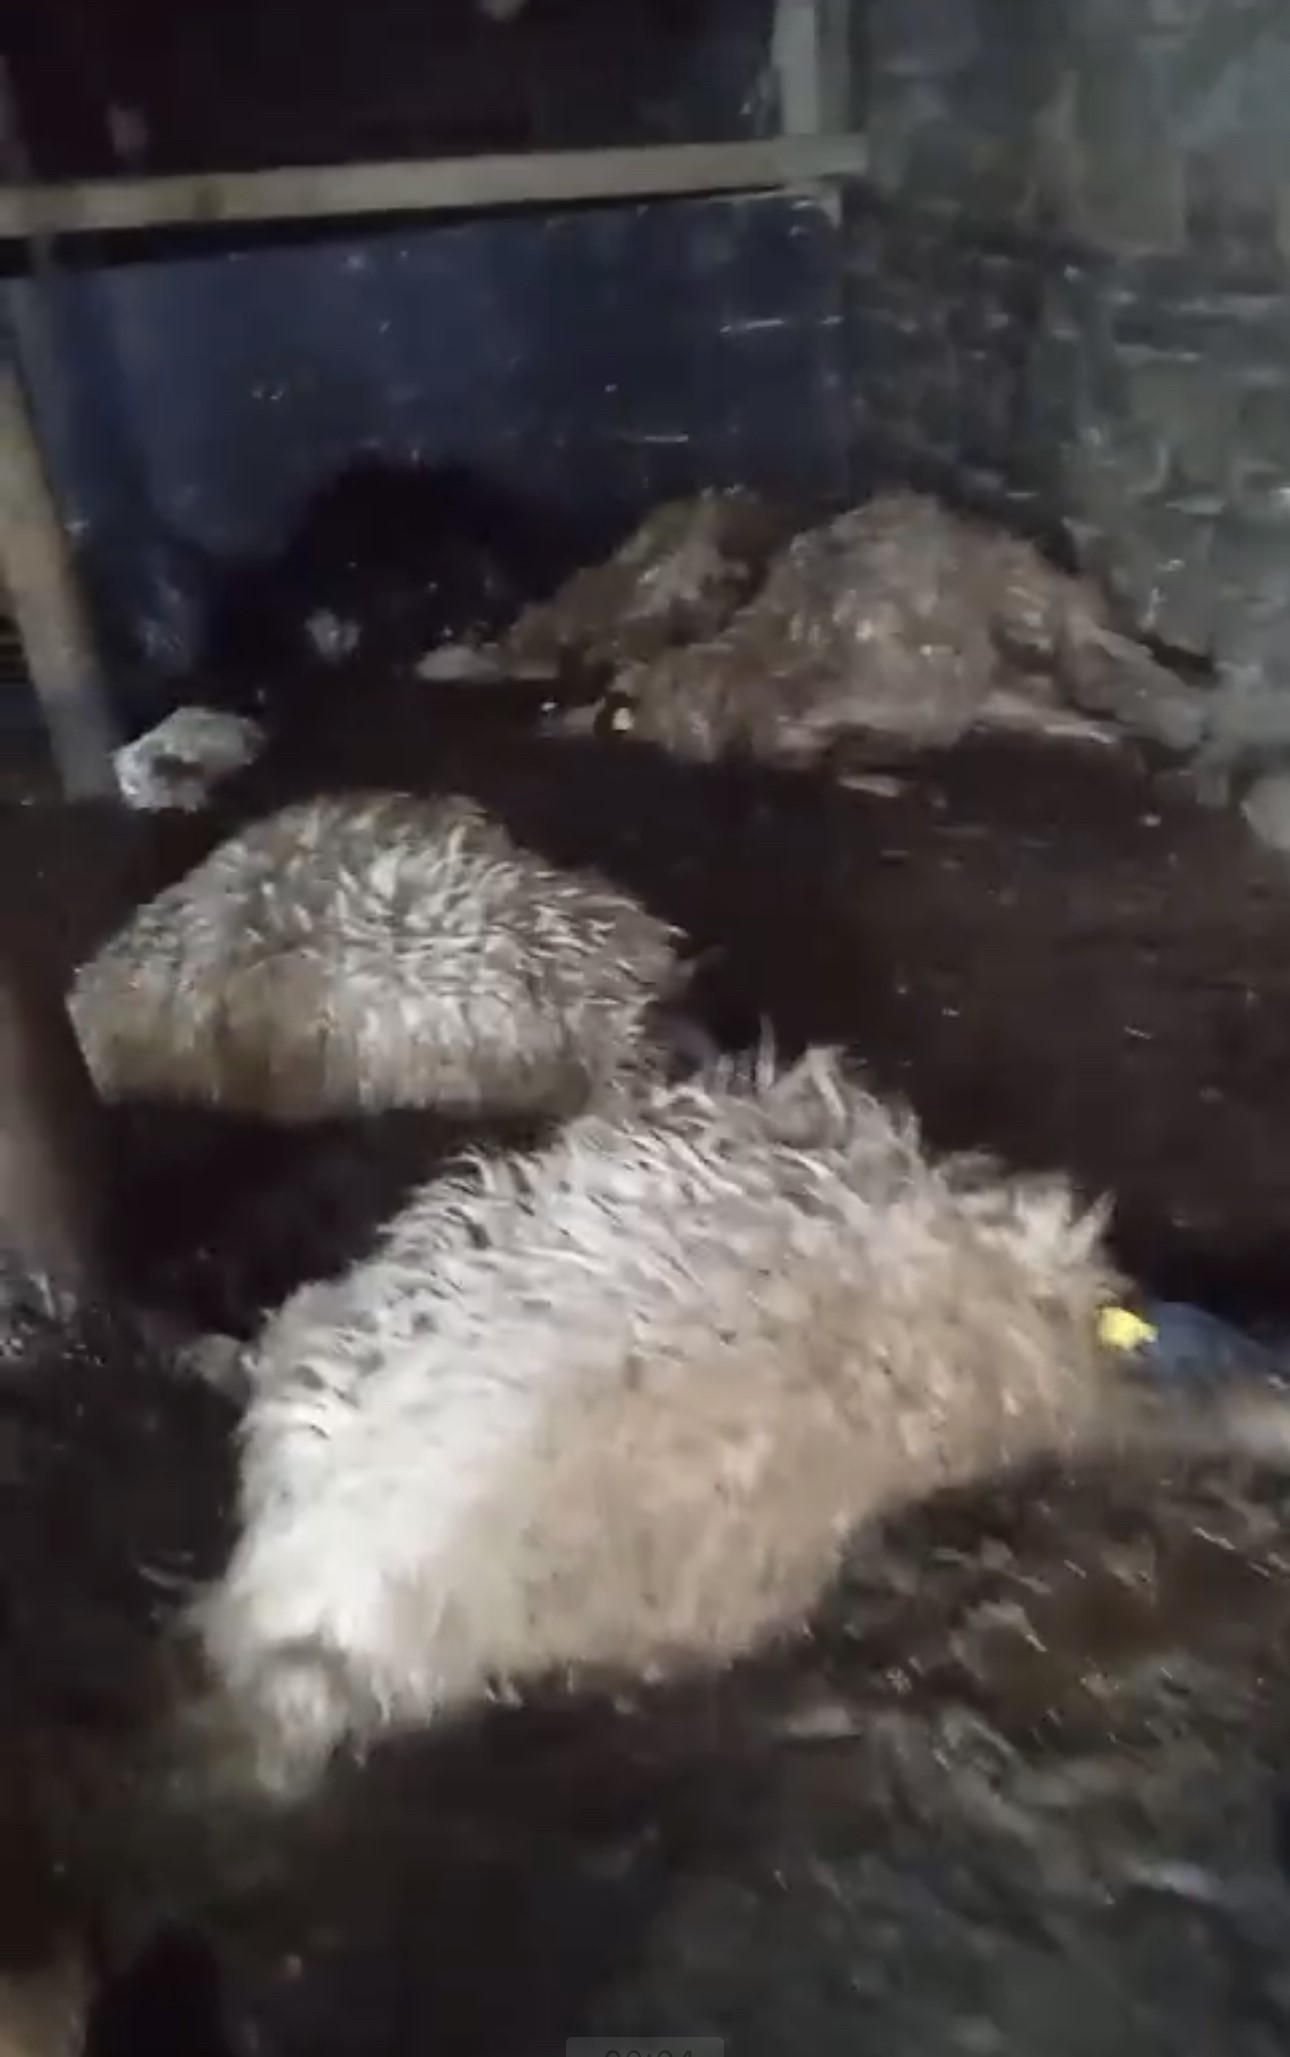 Yüksekova'da ağıl çöktü: 20 koyun telef oldu